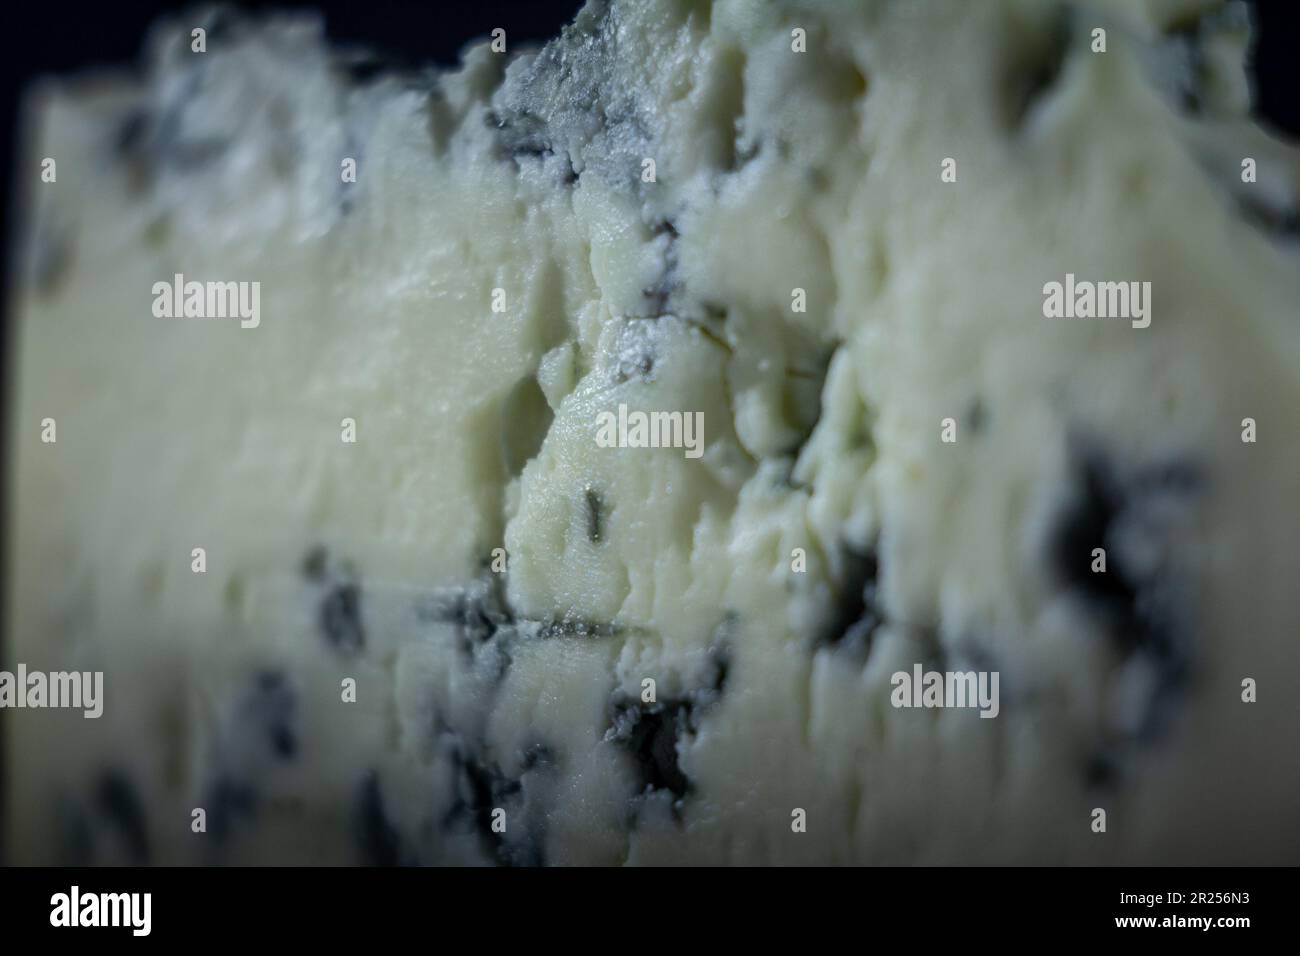 Bild eines Makrofotos eines Stücks französischen Blauschimmelkäses oder Fromage Bleu. Blauschimmelkäse ist halbweicher Käse mit einem scharfen, salzigen Geschmack. Es wird mit hergestellt Stockfoto